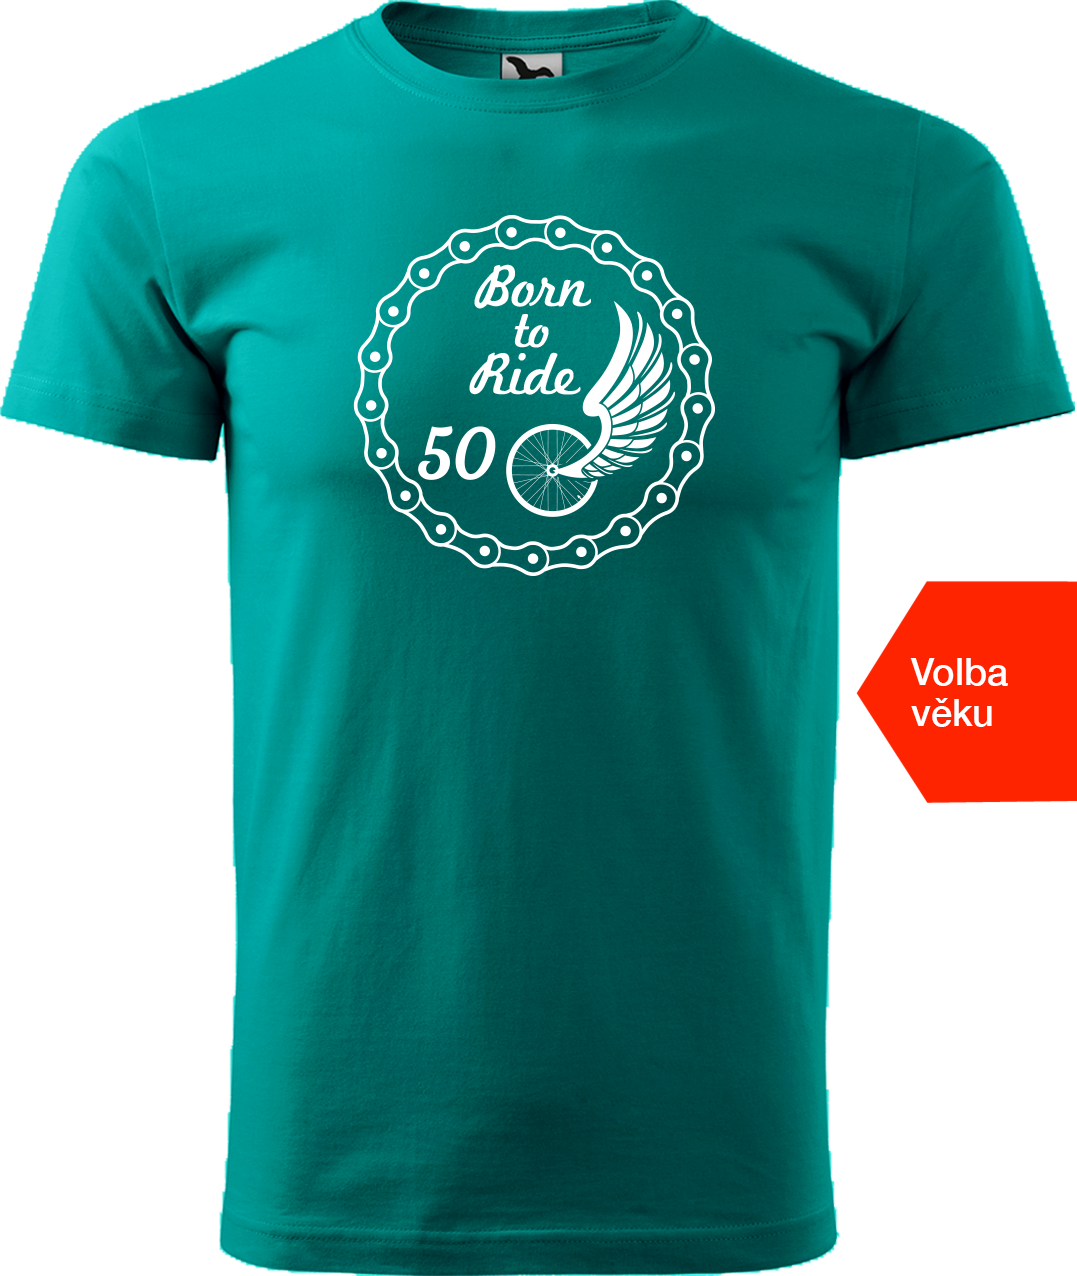 Pánské tričko pro cyklistu s věkem - Born to Ride (wings) Velikost: S, Barva: Emerald (19)